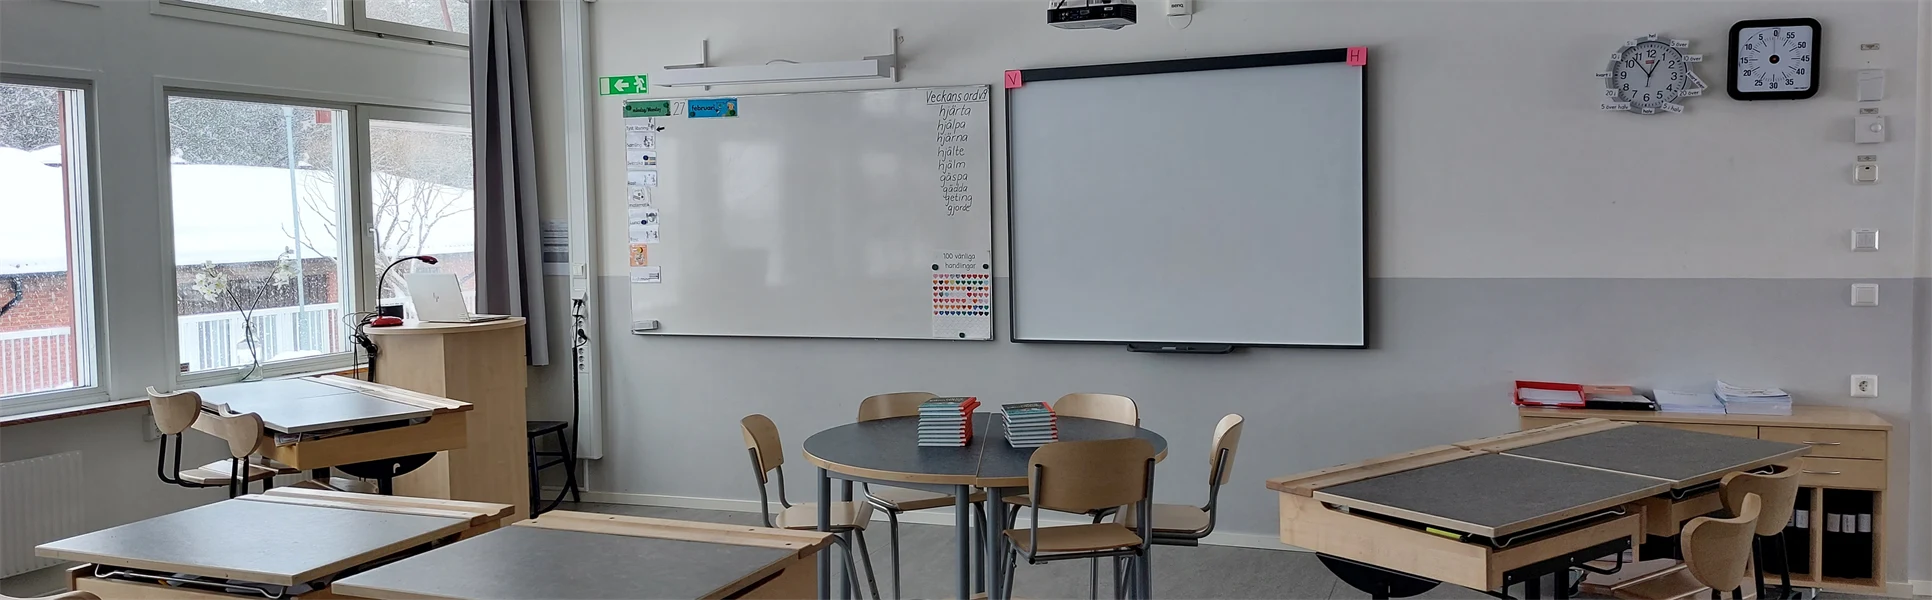 Ett foto från ett klassrum på Böle skola